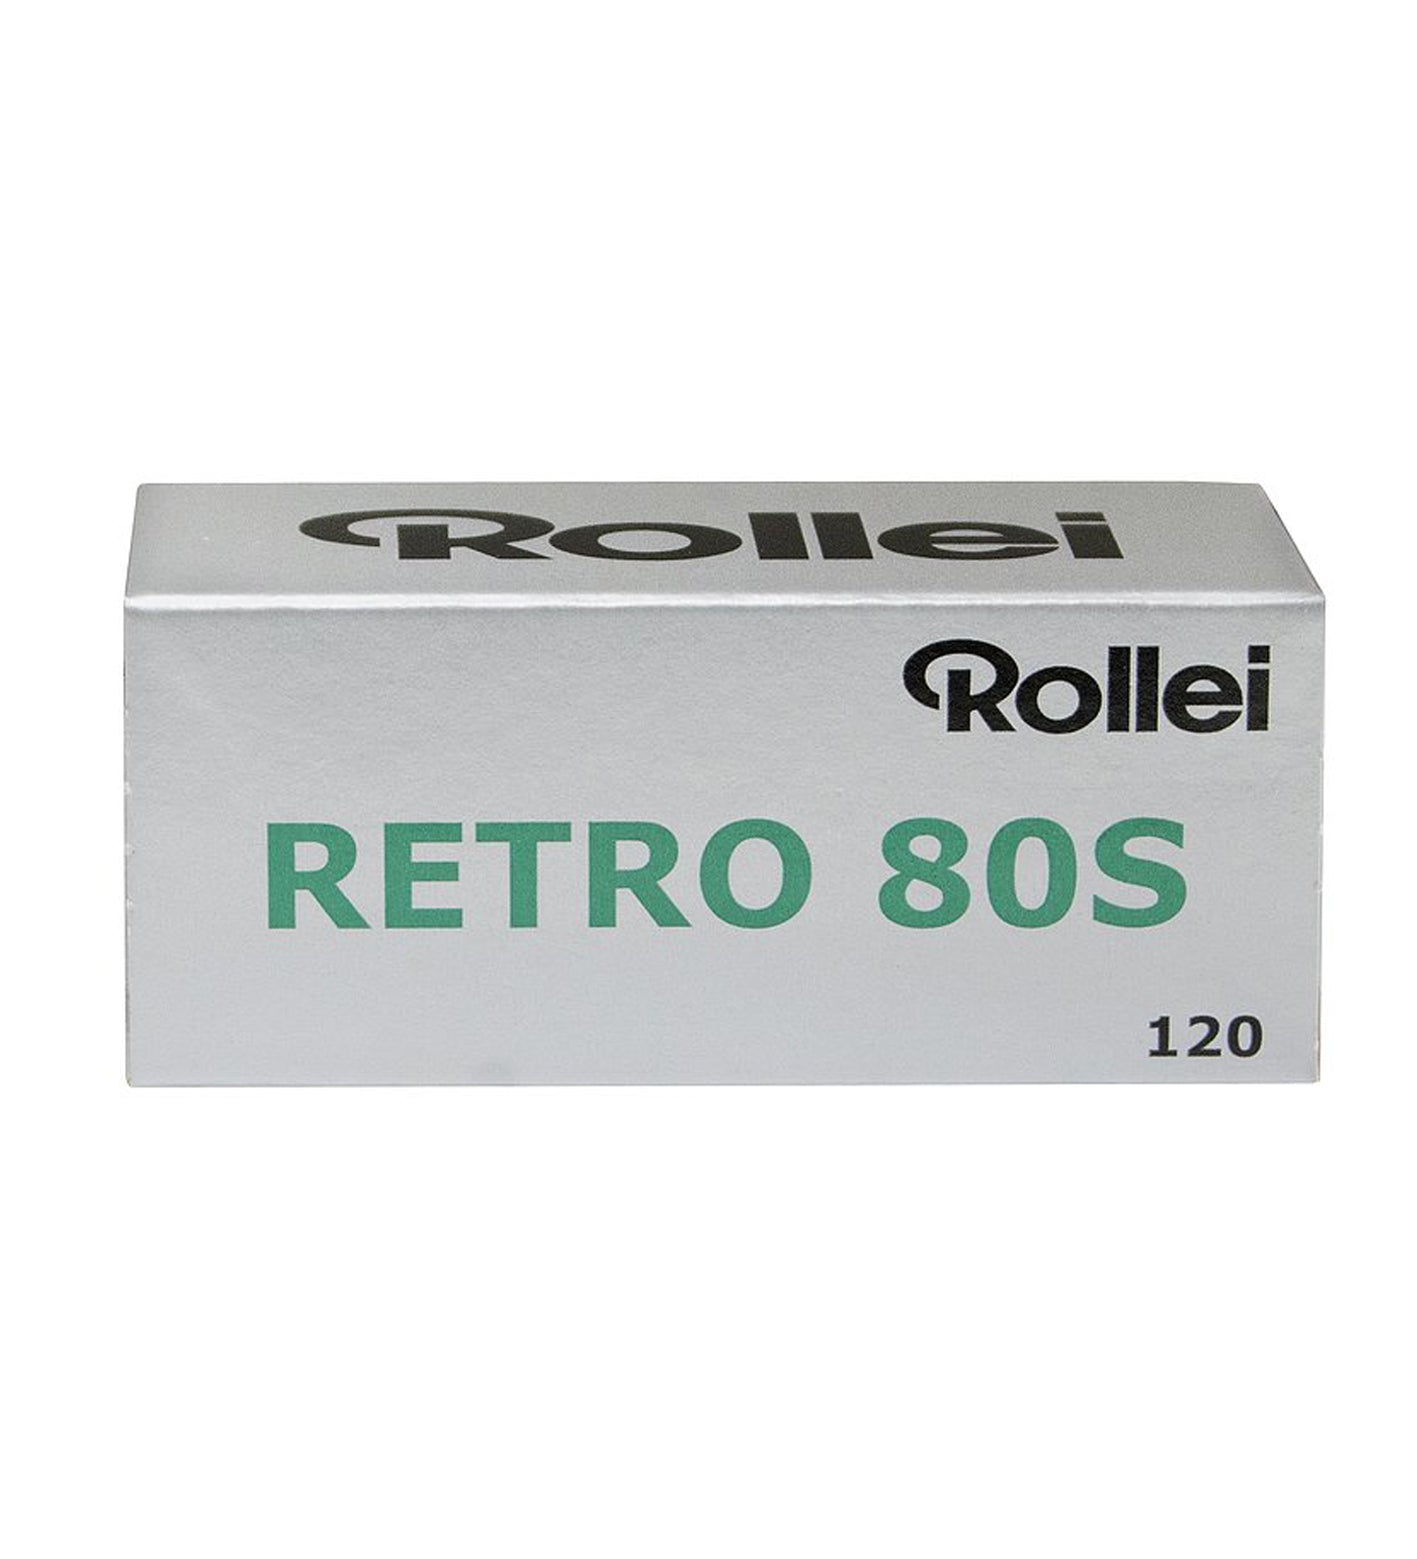 Rollei Retro 80 S 120 Film (£7.50 incl VAT)